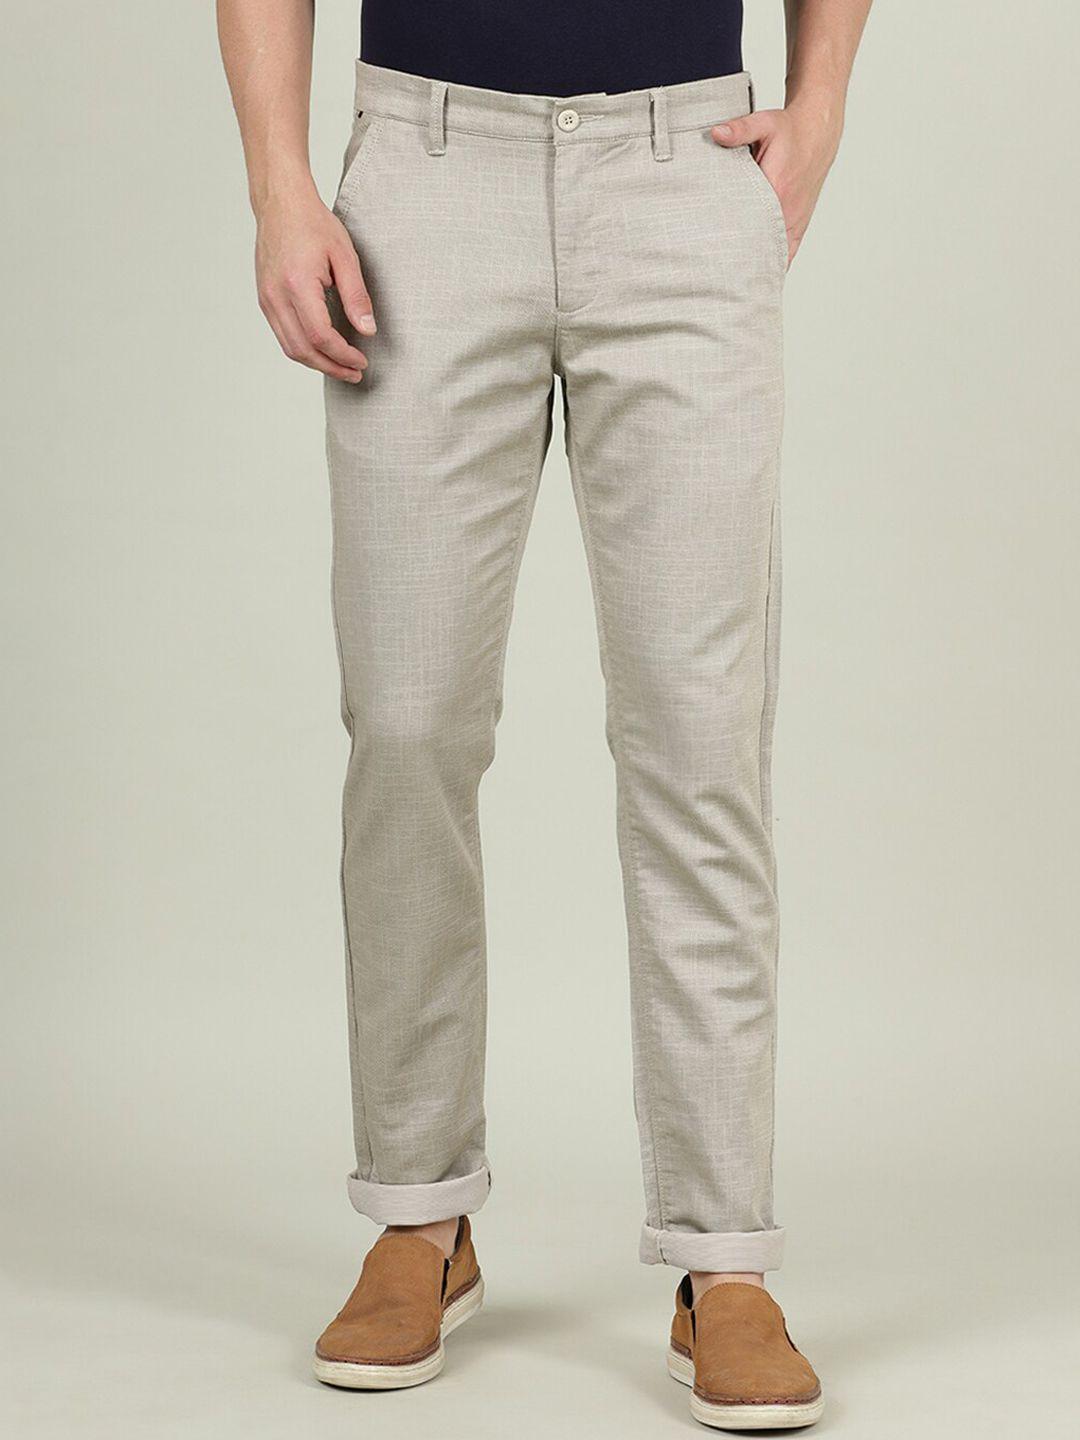 crocodile men cream-coloured smart slim fit cotton chinos trousers